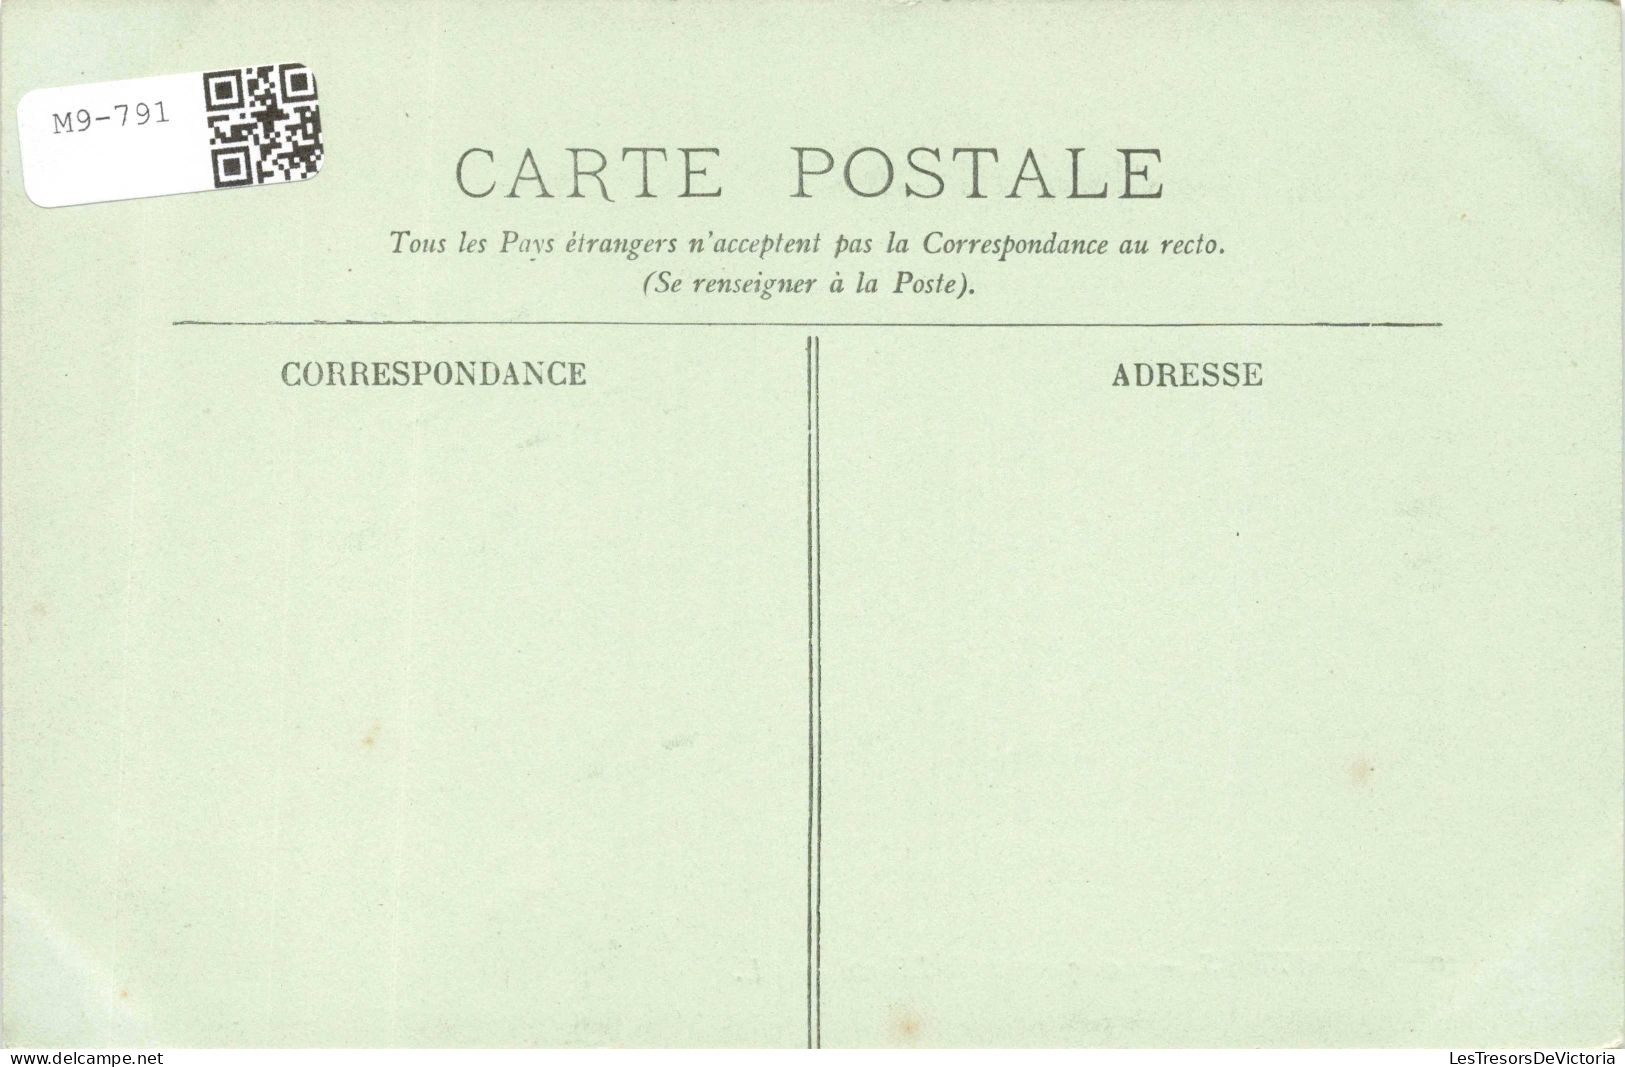 FRANCE - Moutiers - Square De La Liberté - LL.- Carte Postale Ancienne - Moutiers